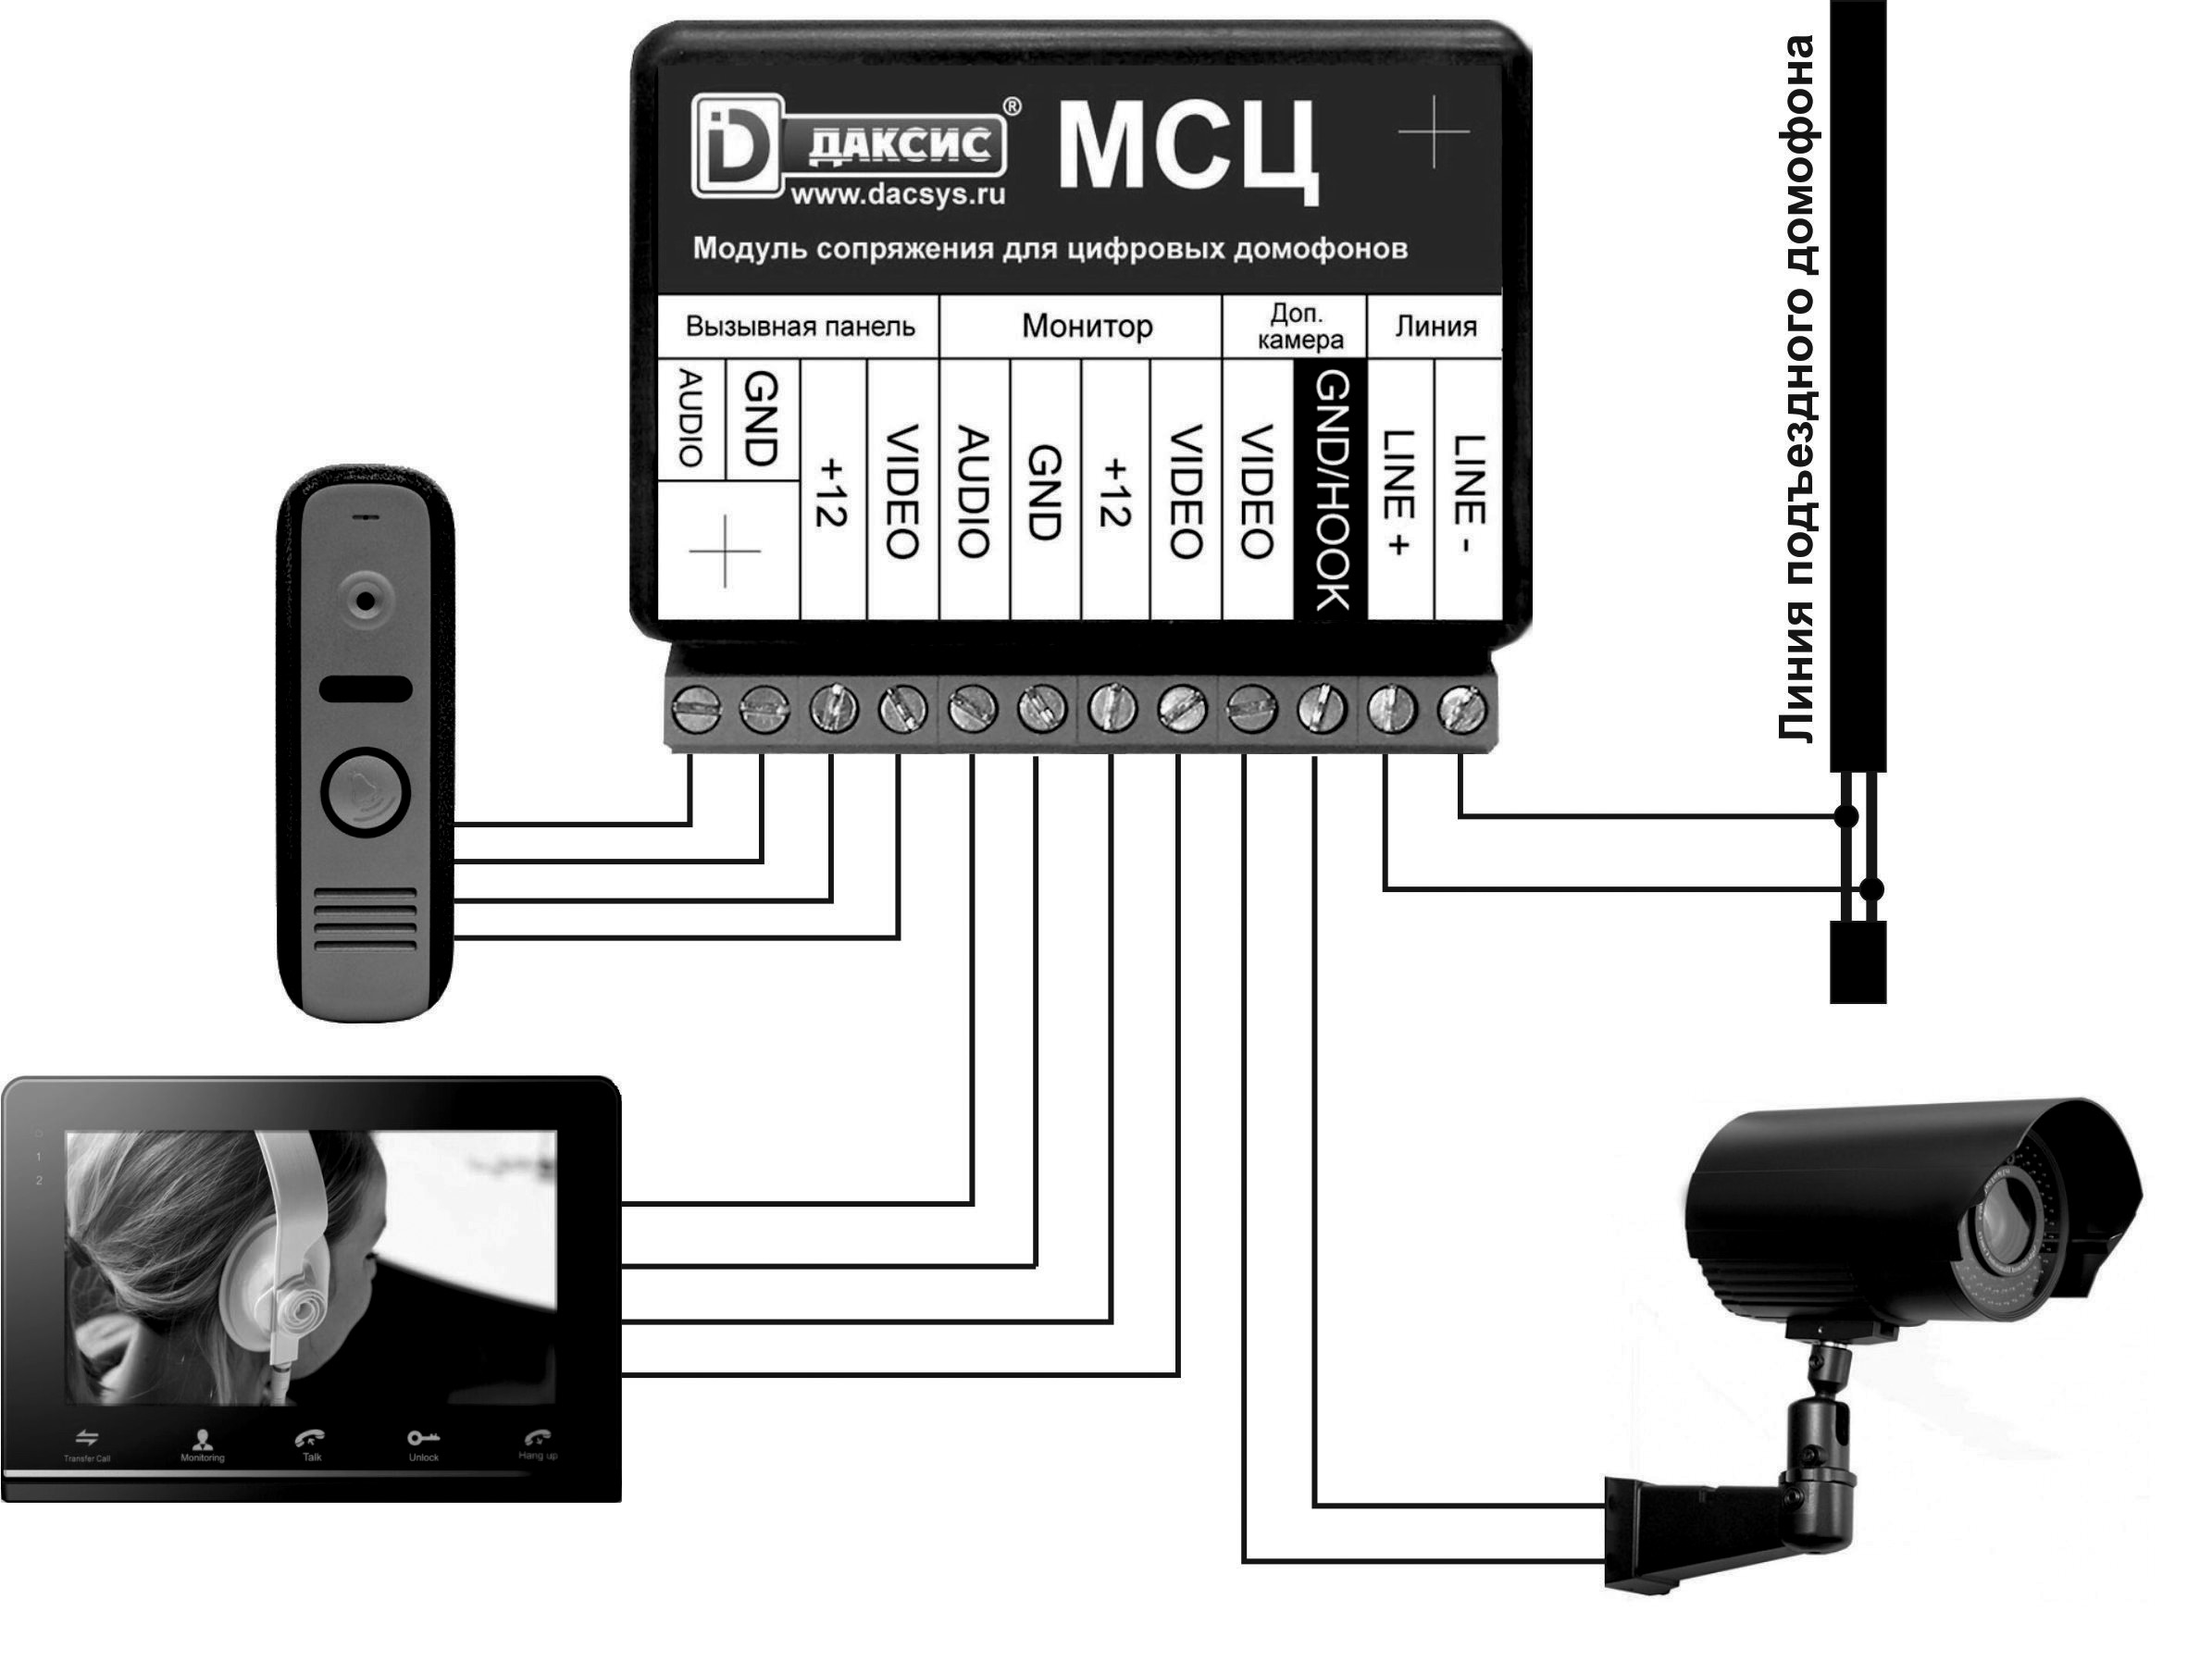 Установить домофон msk. Модуль сопряжения для видеодомофона МСЦ. Модуль сопряжения Даксис МСЦ. Блок сопряжения домофона МСЦ. Блок сопряжения для видеодомофона цифровой.